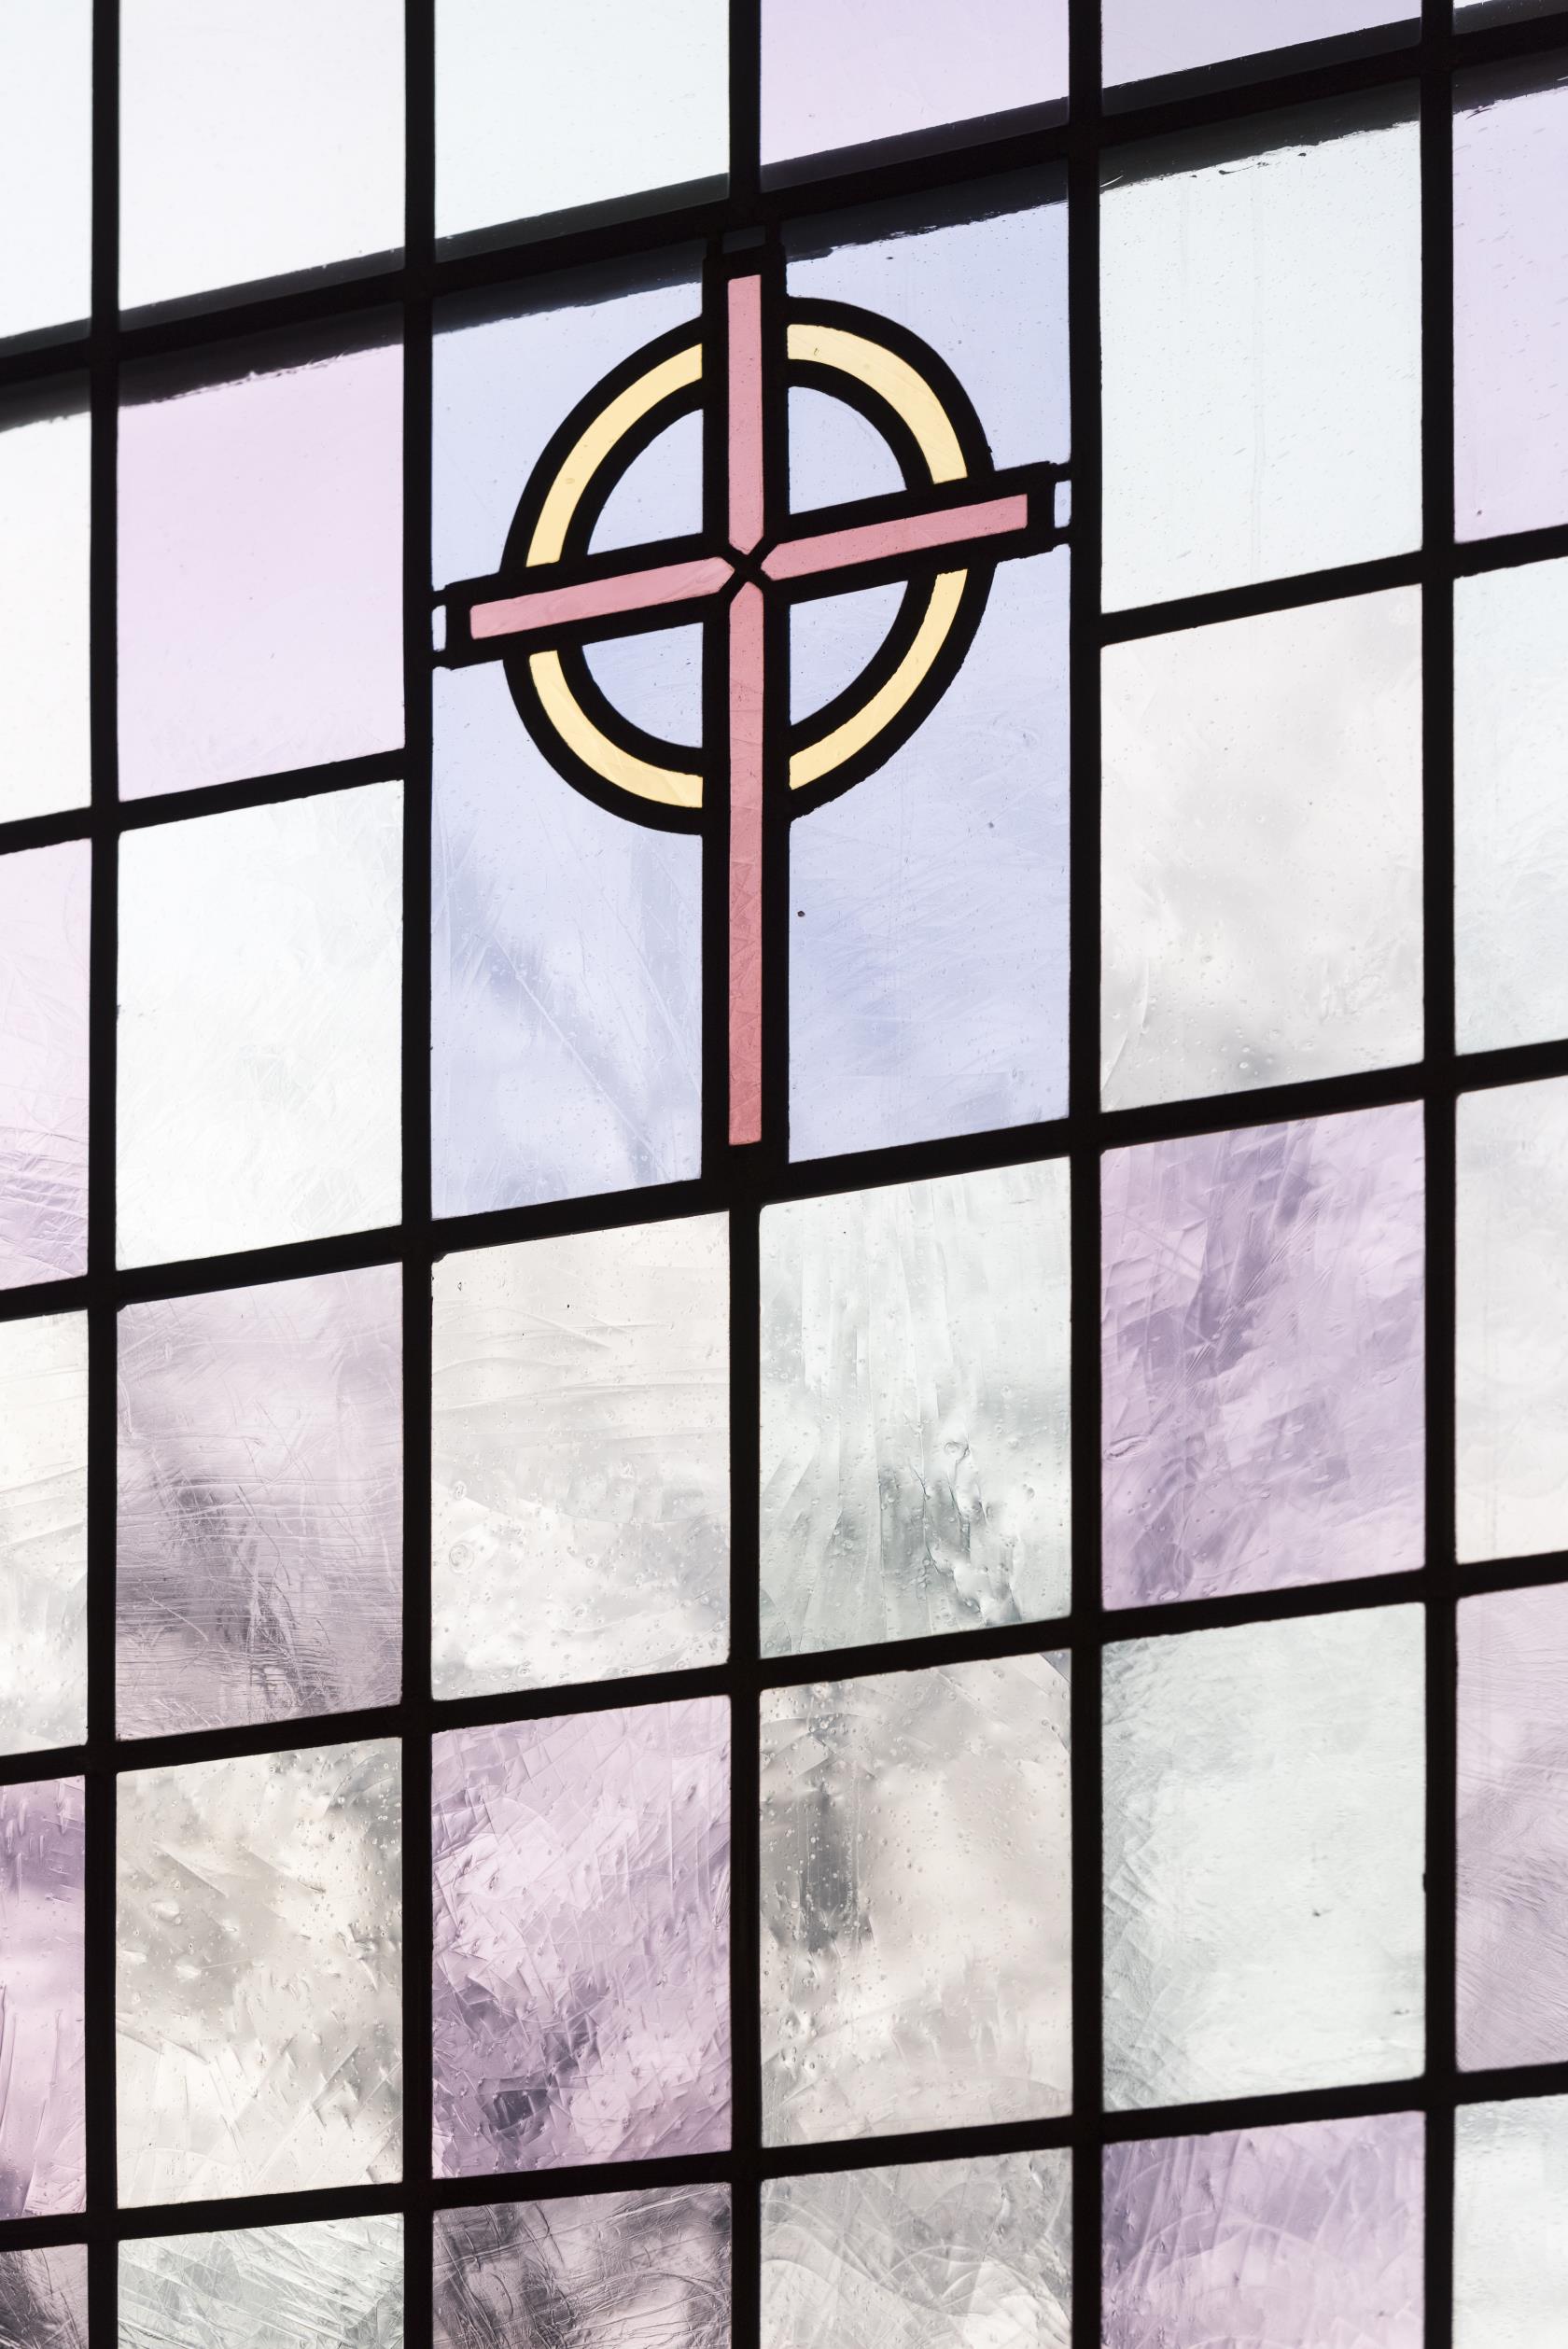 Närbild på ett färgat kyrkfönster med ett kors i mitten.